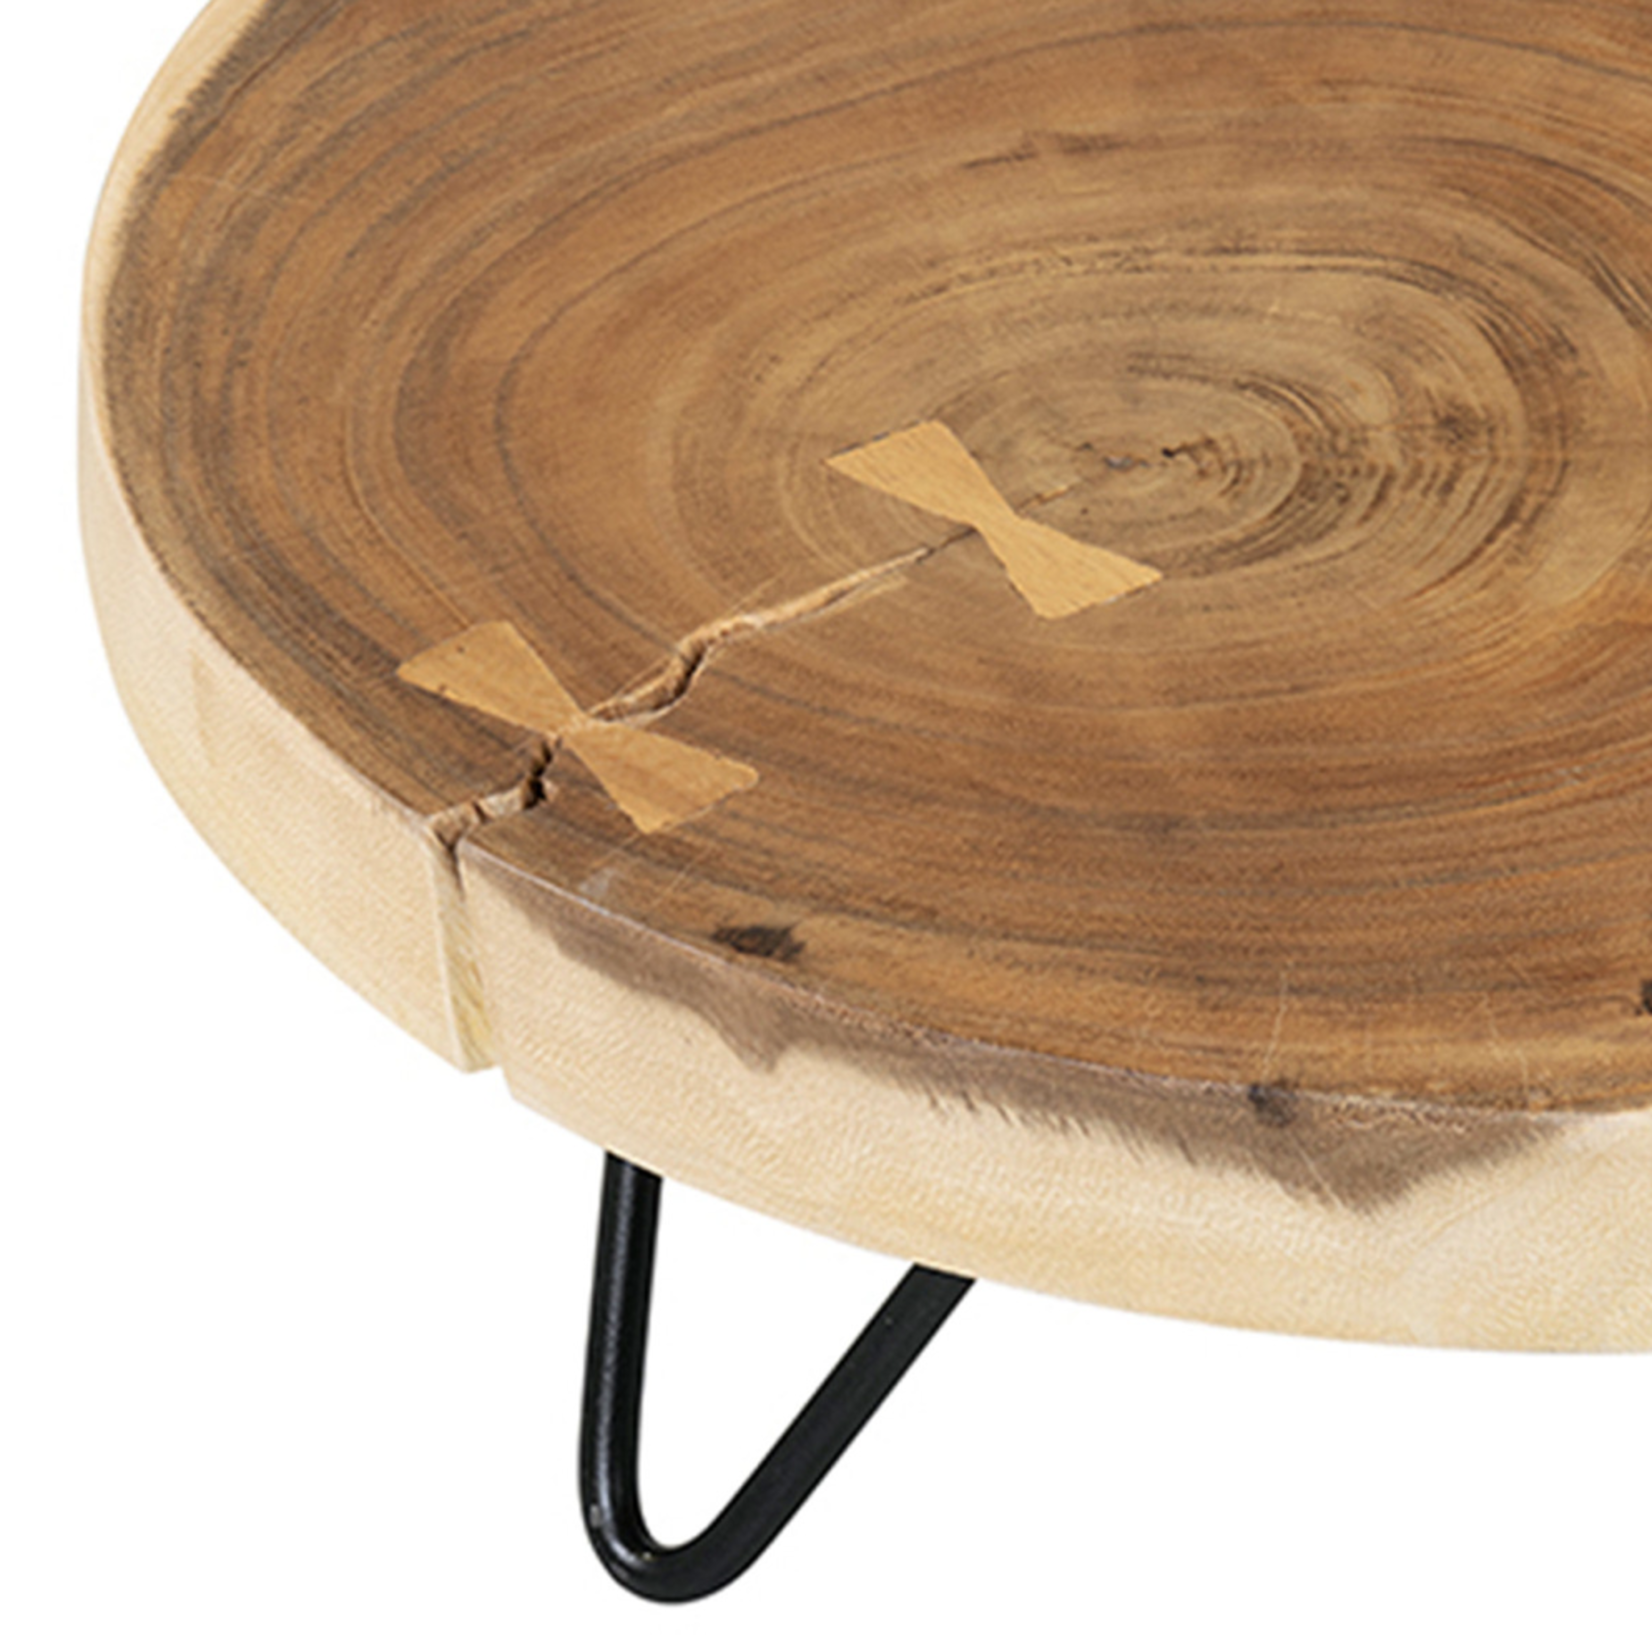 9" Round Teak Wood Riser With Iron Base